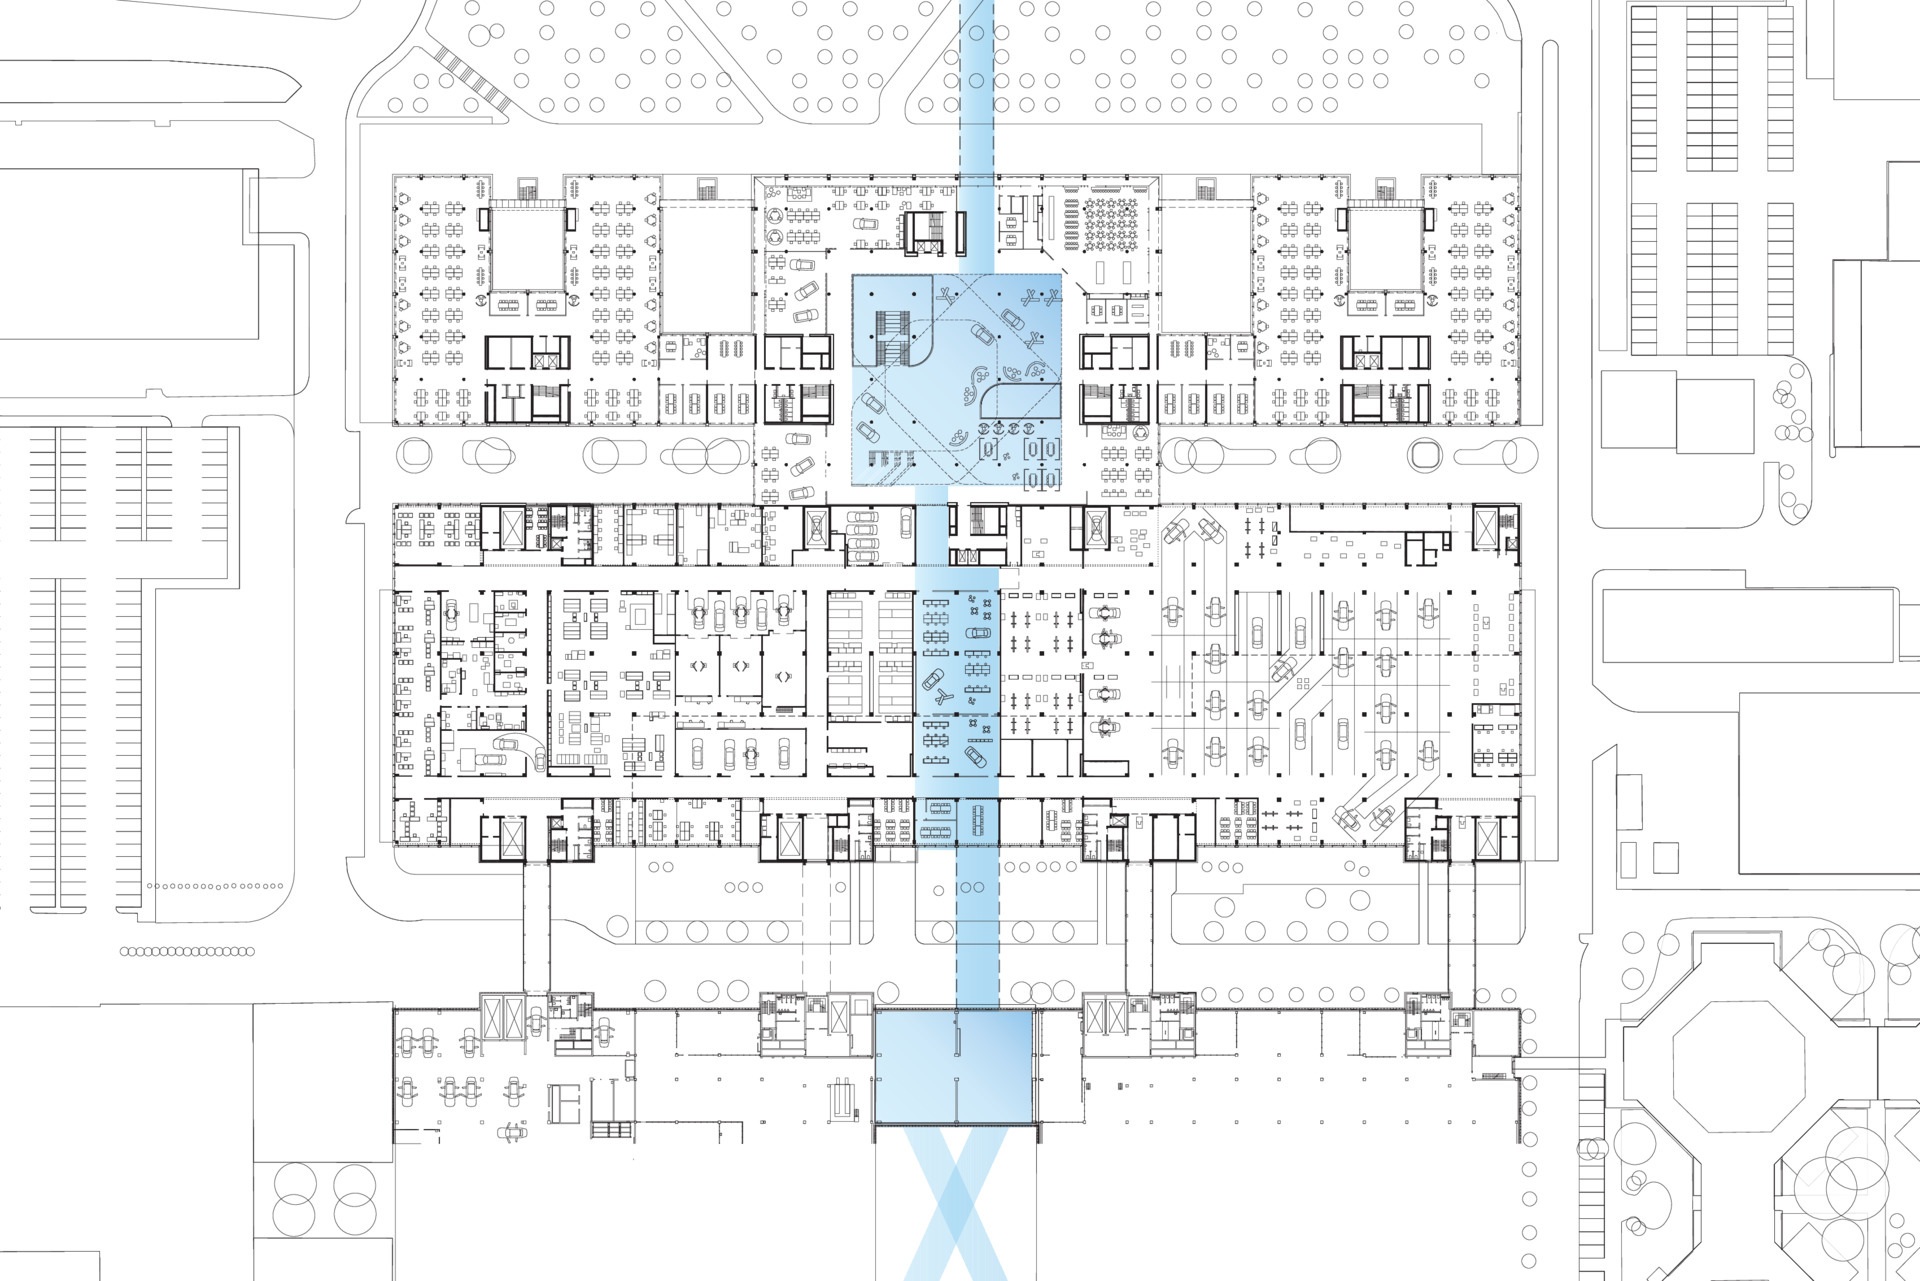 Floor plan - level 1 (overview)